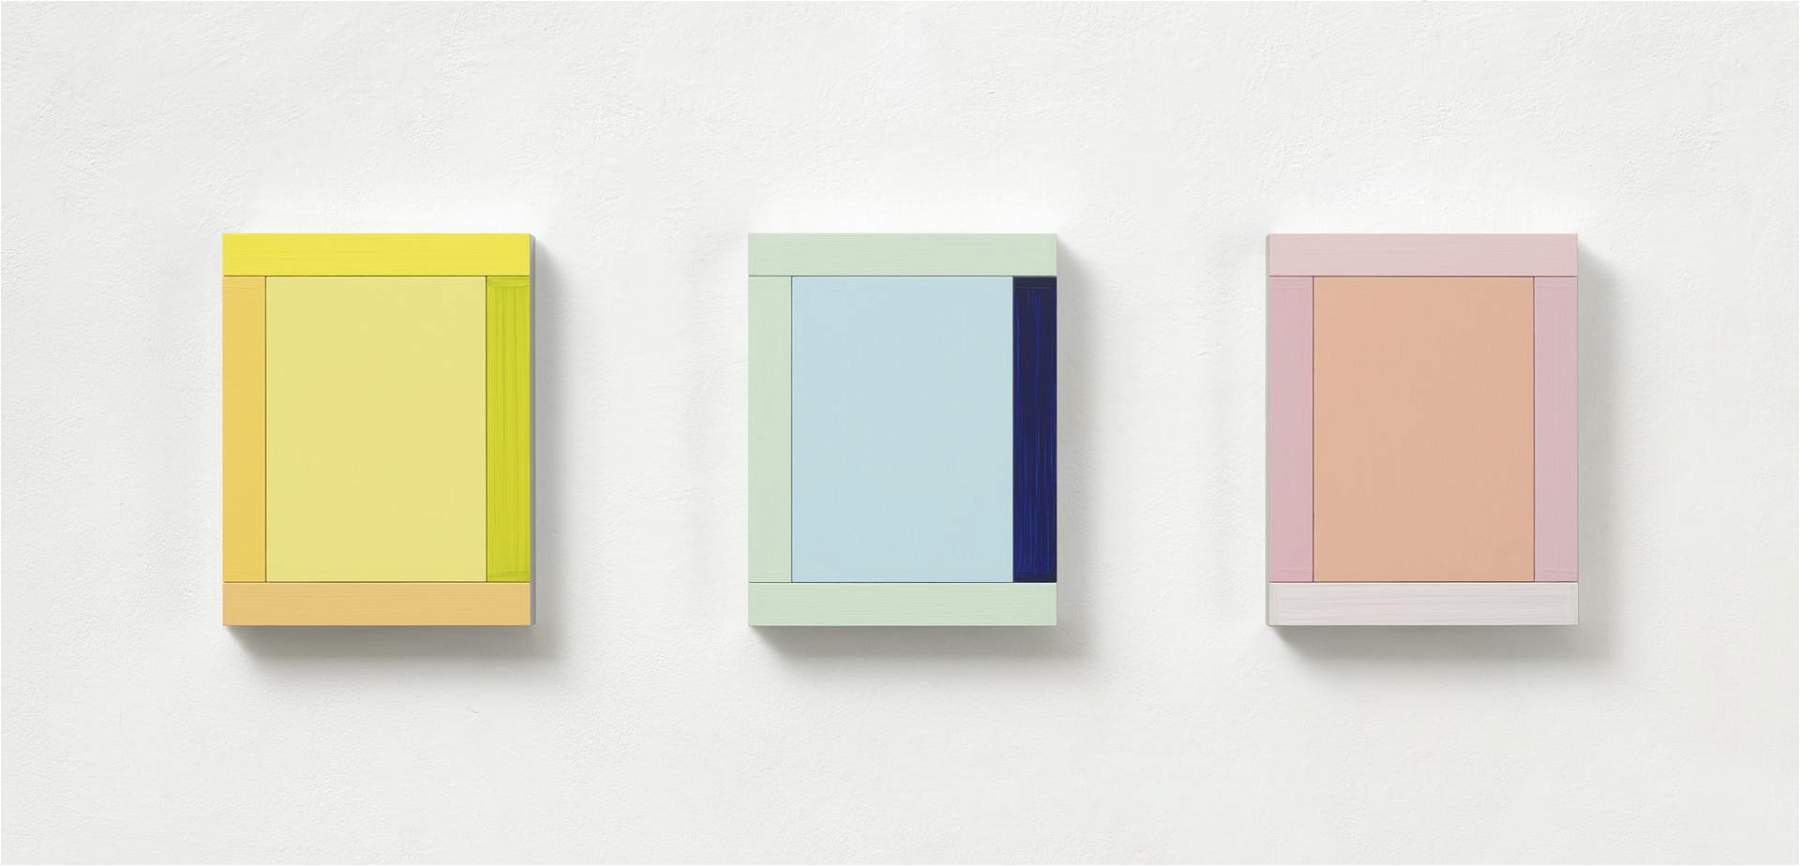 Milano, alla galleria Dep Art in mostra il minimalismo di Imi Knoebel